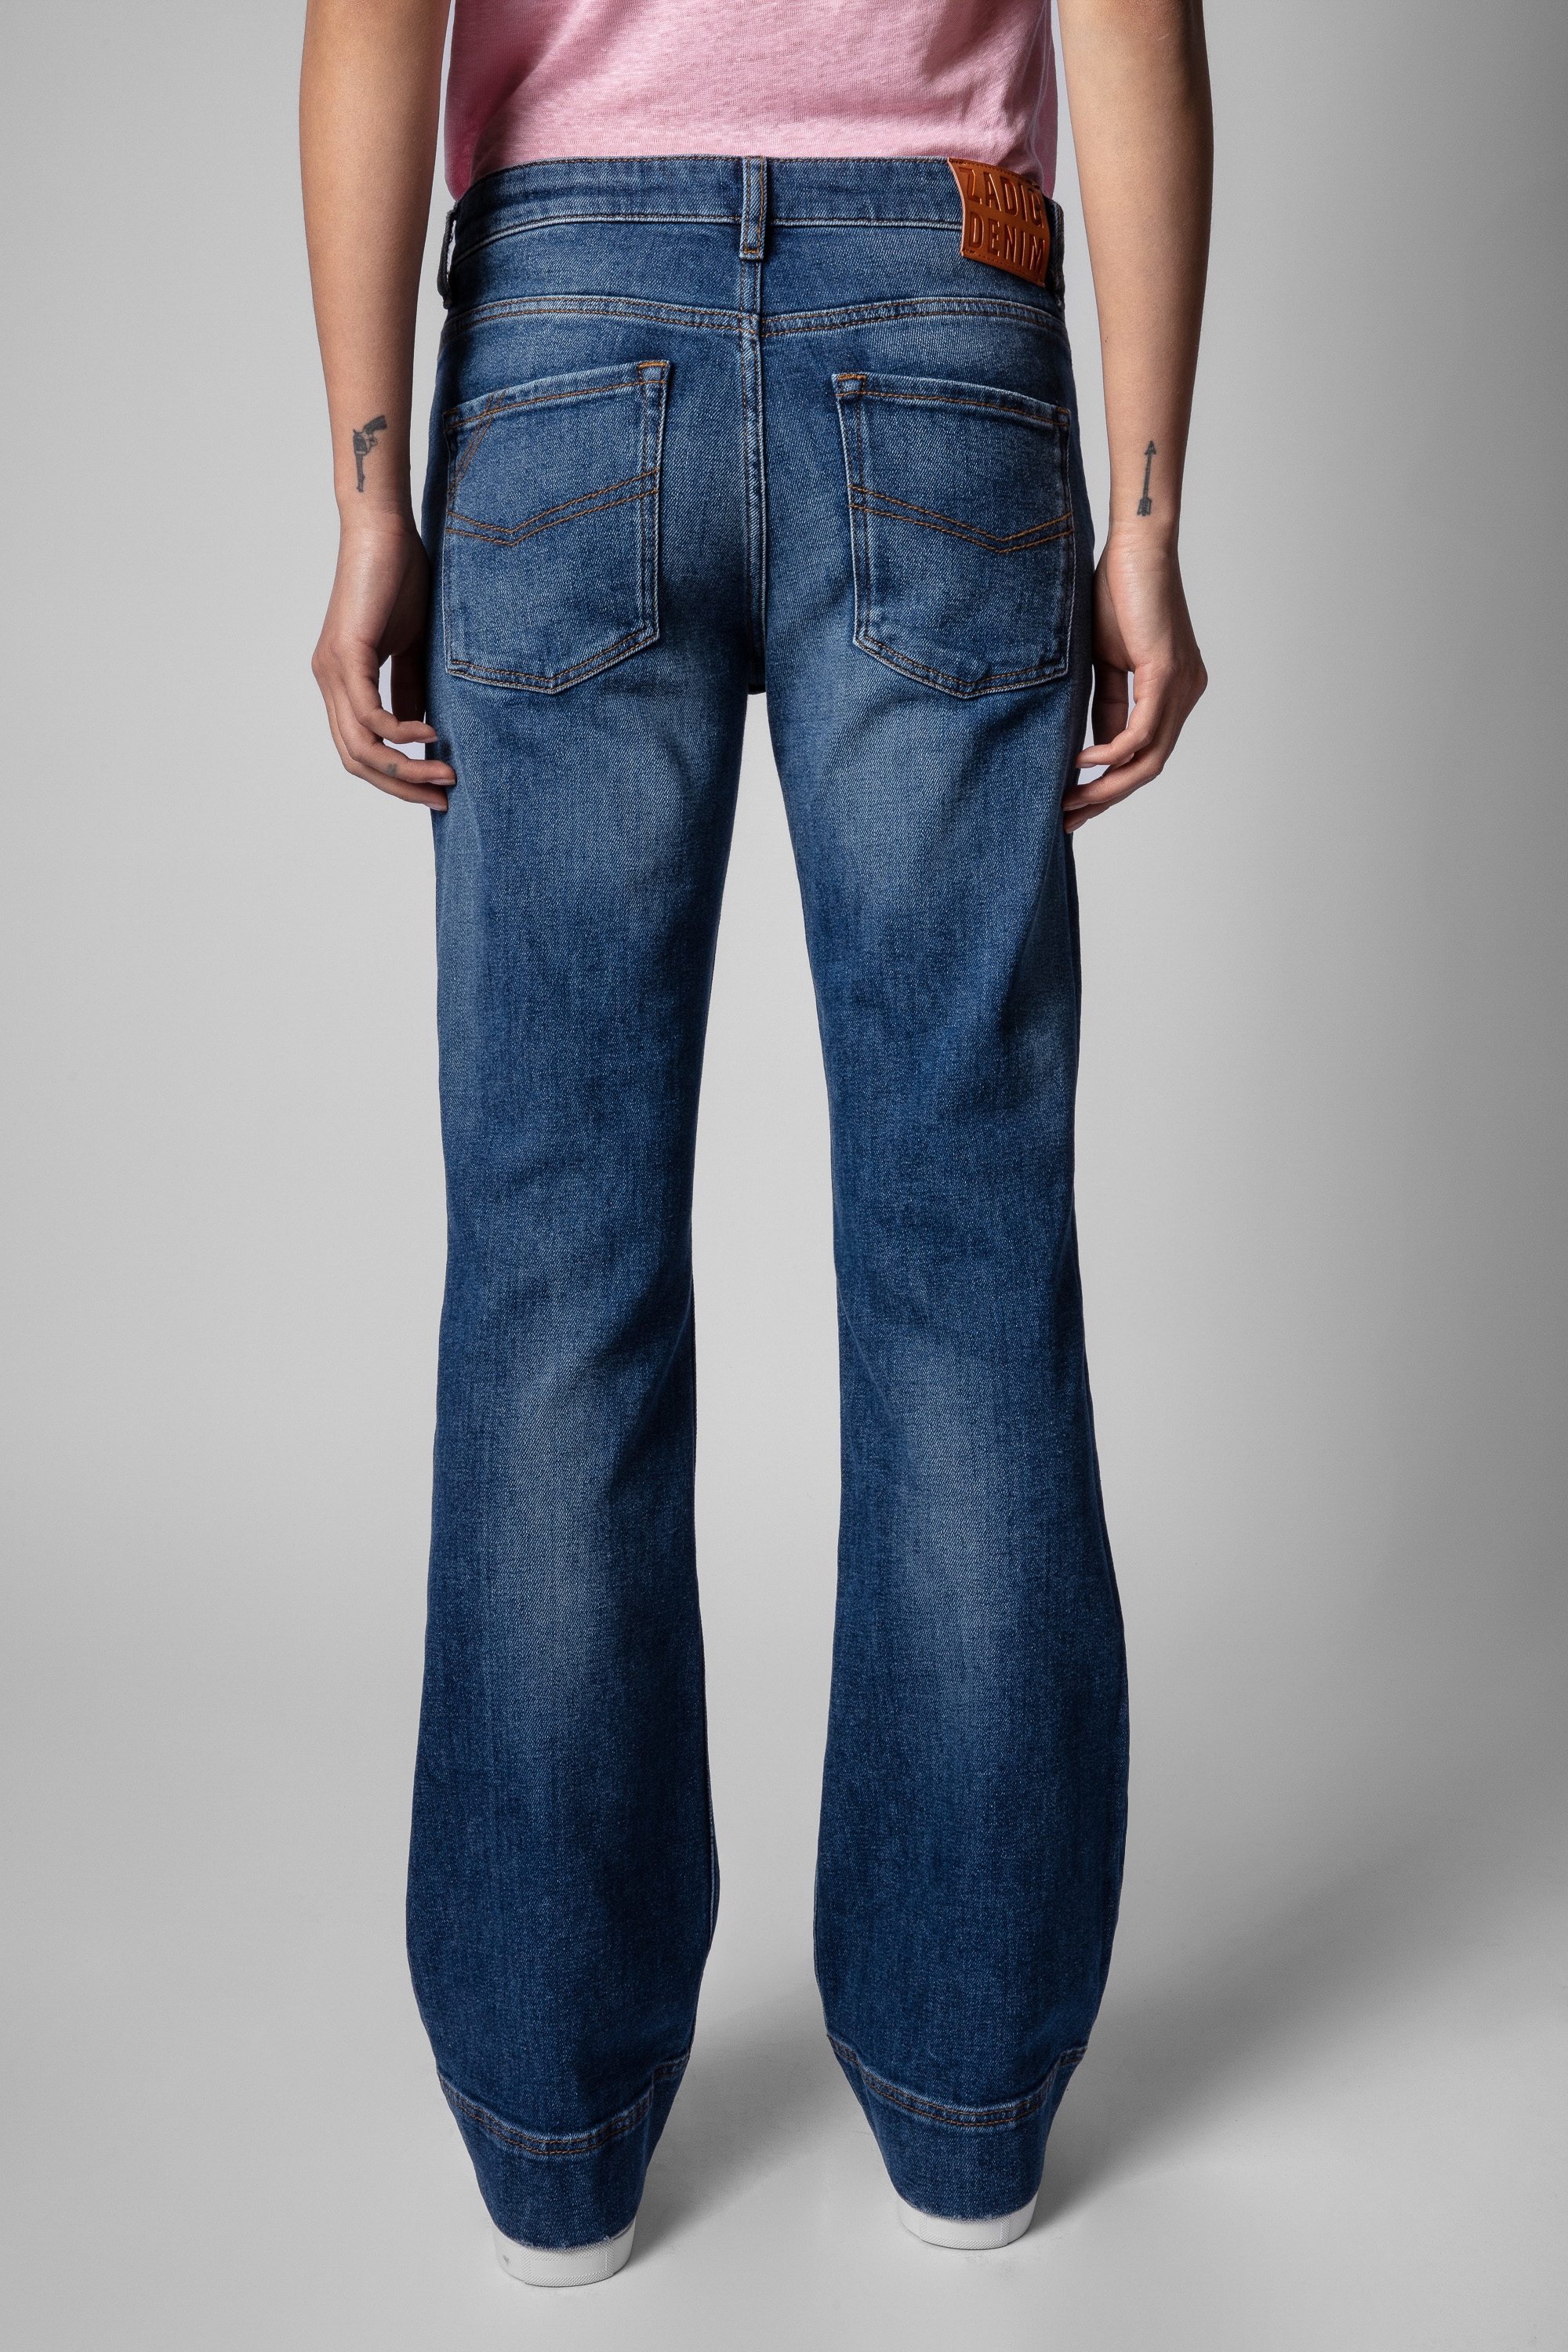 Vincente Denim Jeans